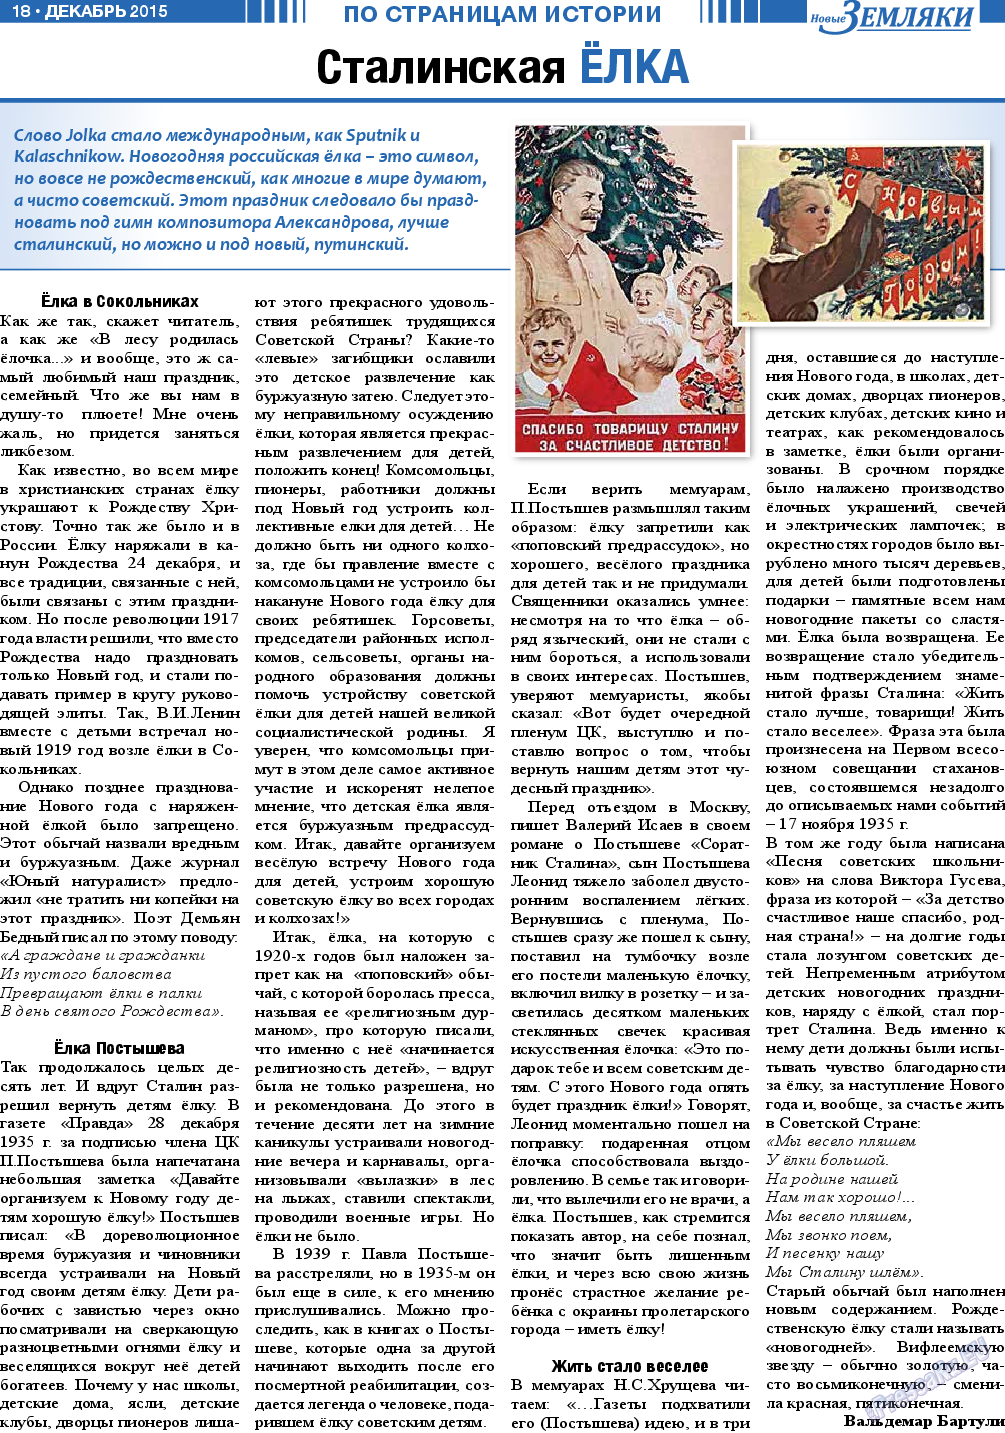 Новые Земляки, газета. 2015 №12 стр.18